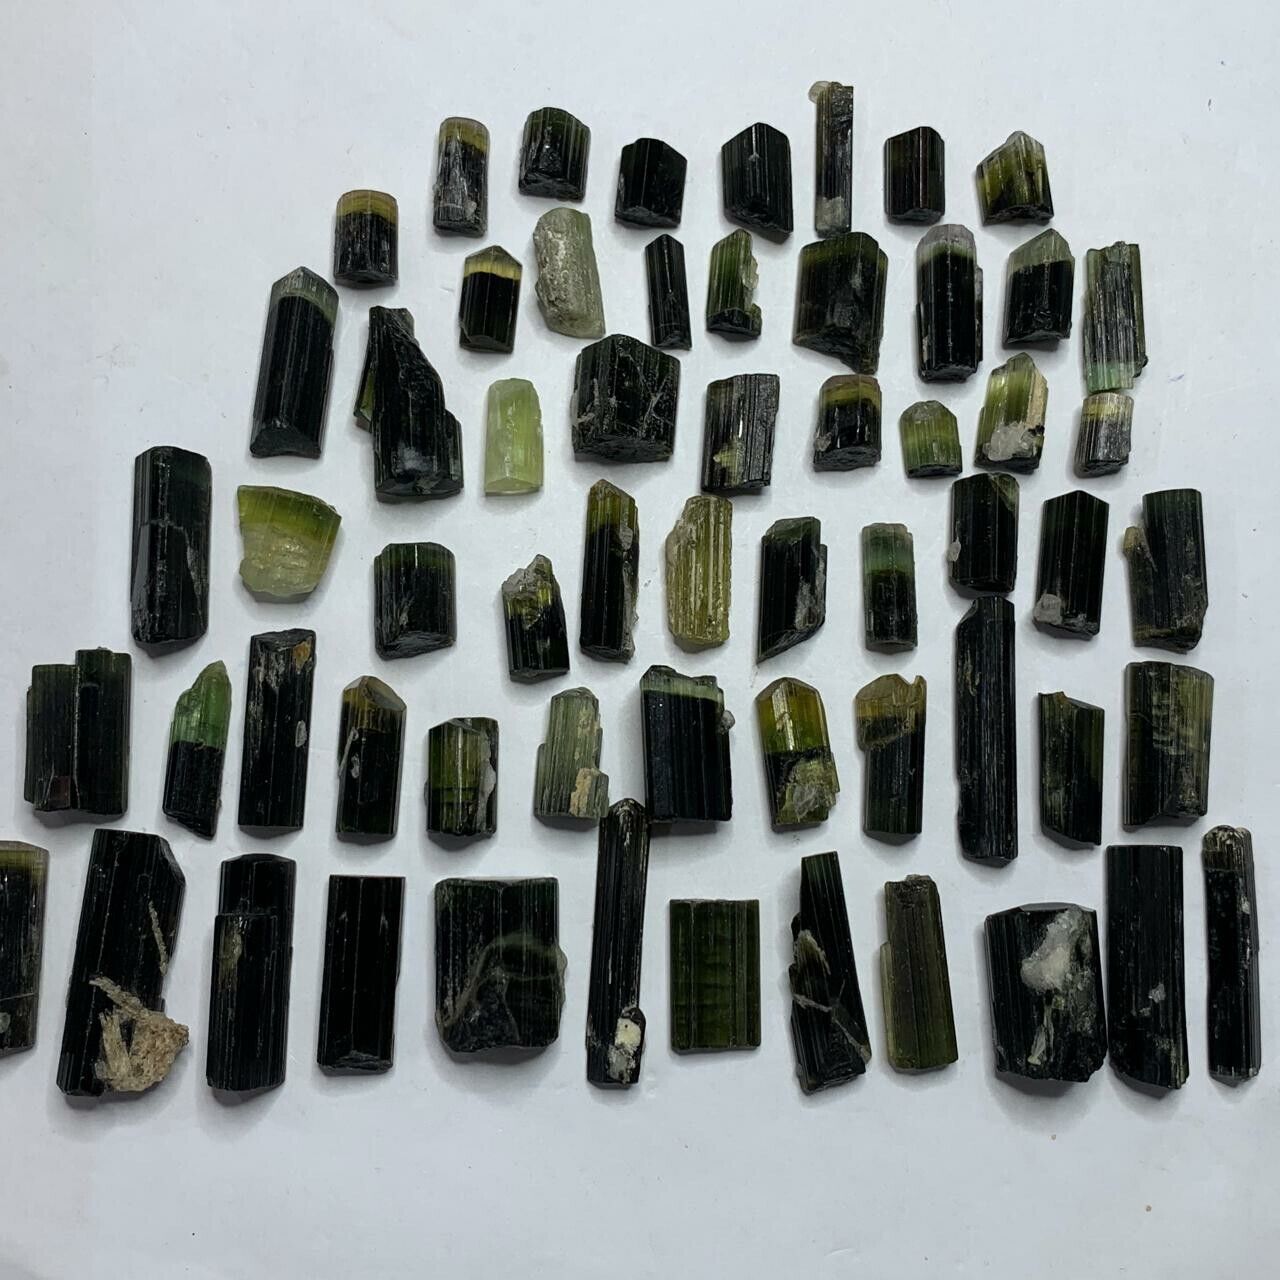 60 Pcs Natural Green Cap Tourmaline Crystals Lot From Astak Nala Mine Pakistan 